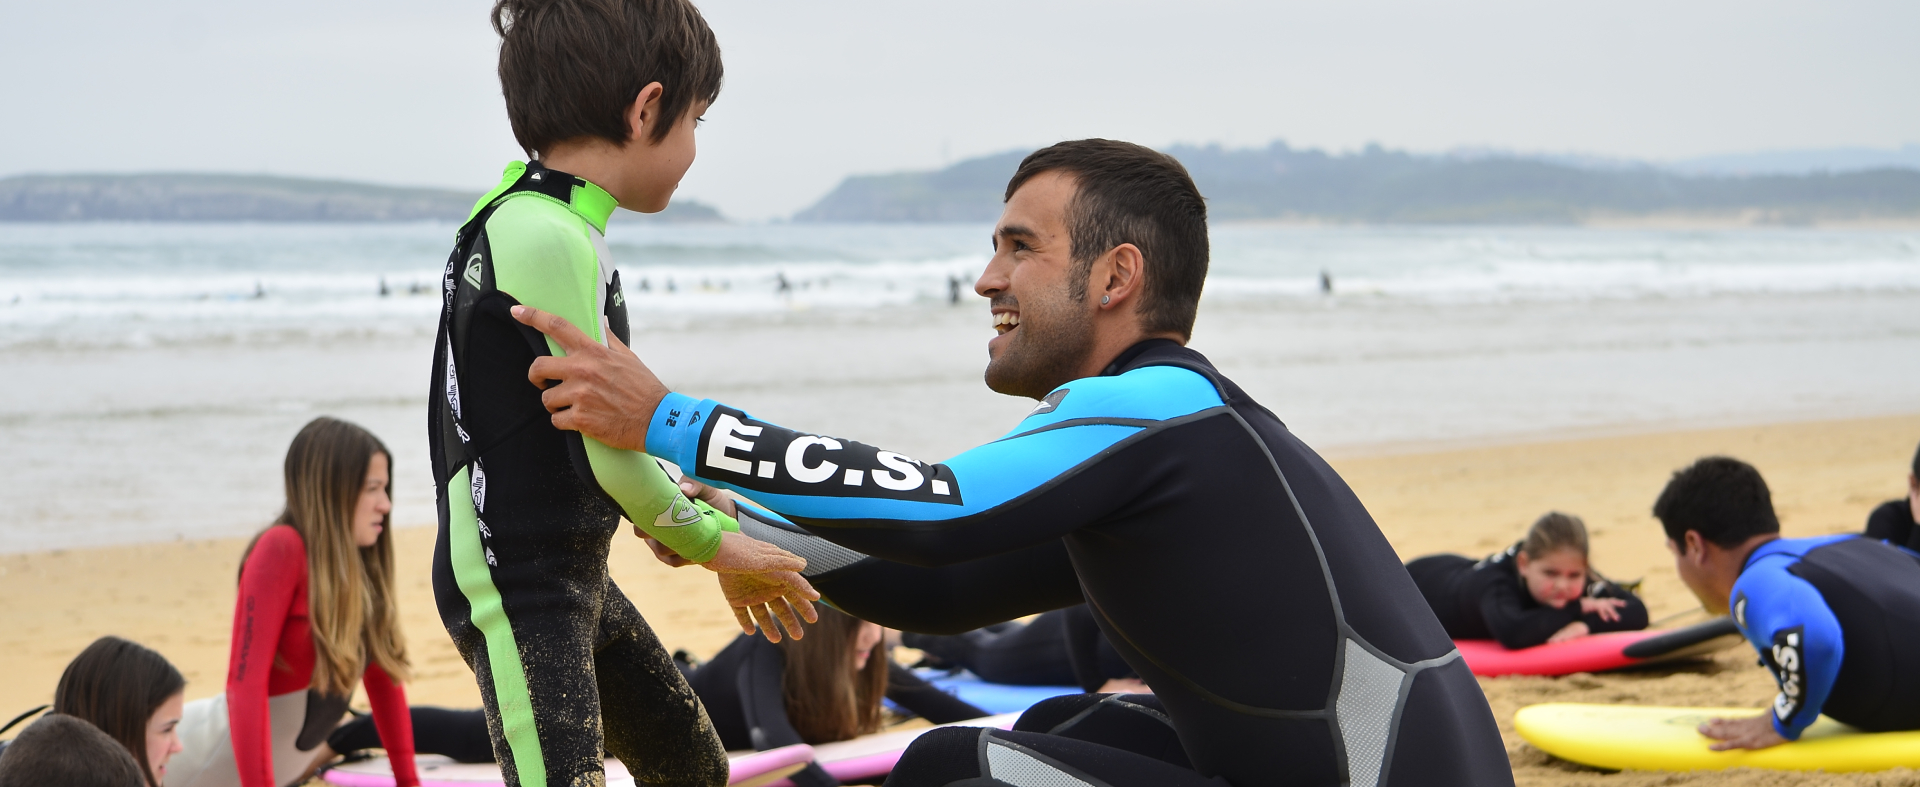 Instructor de surf ayudando a pequeño participante